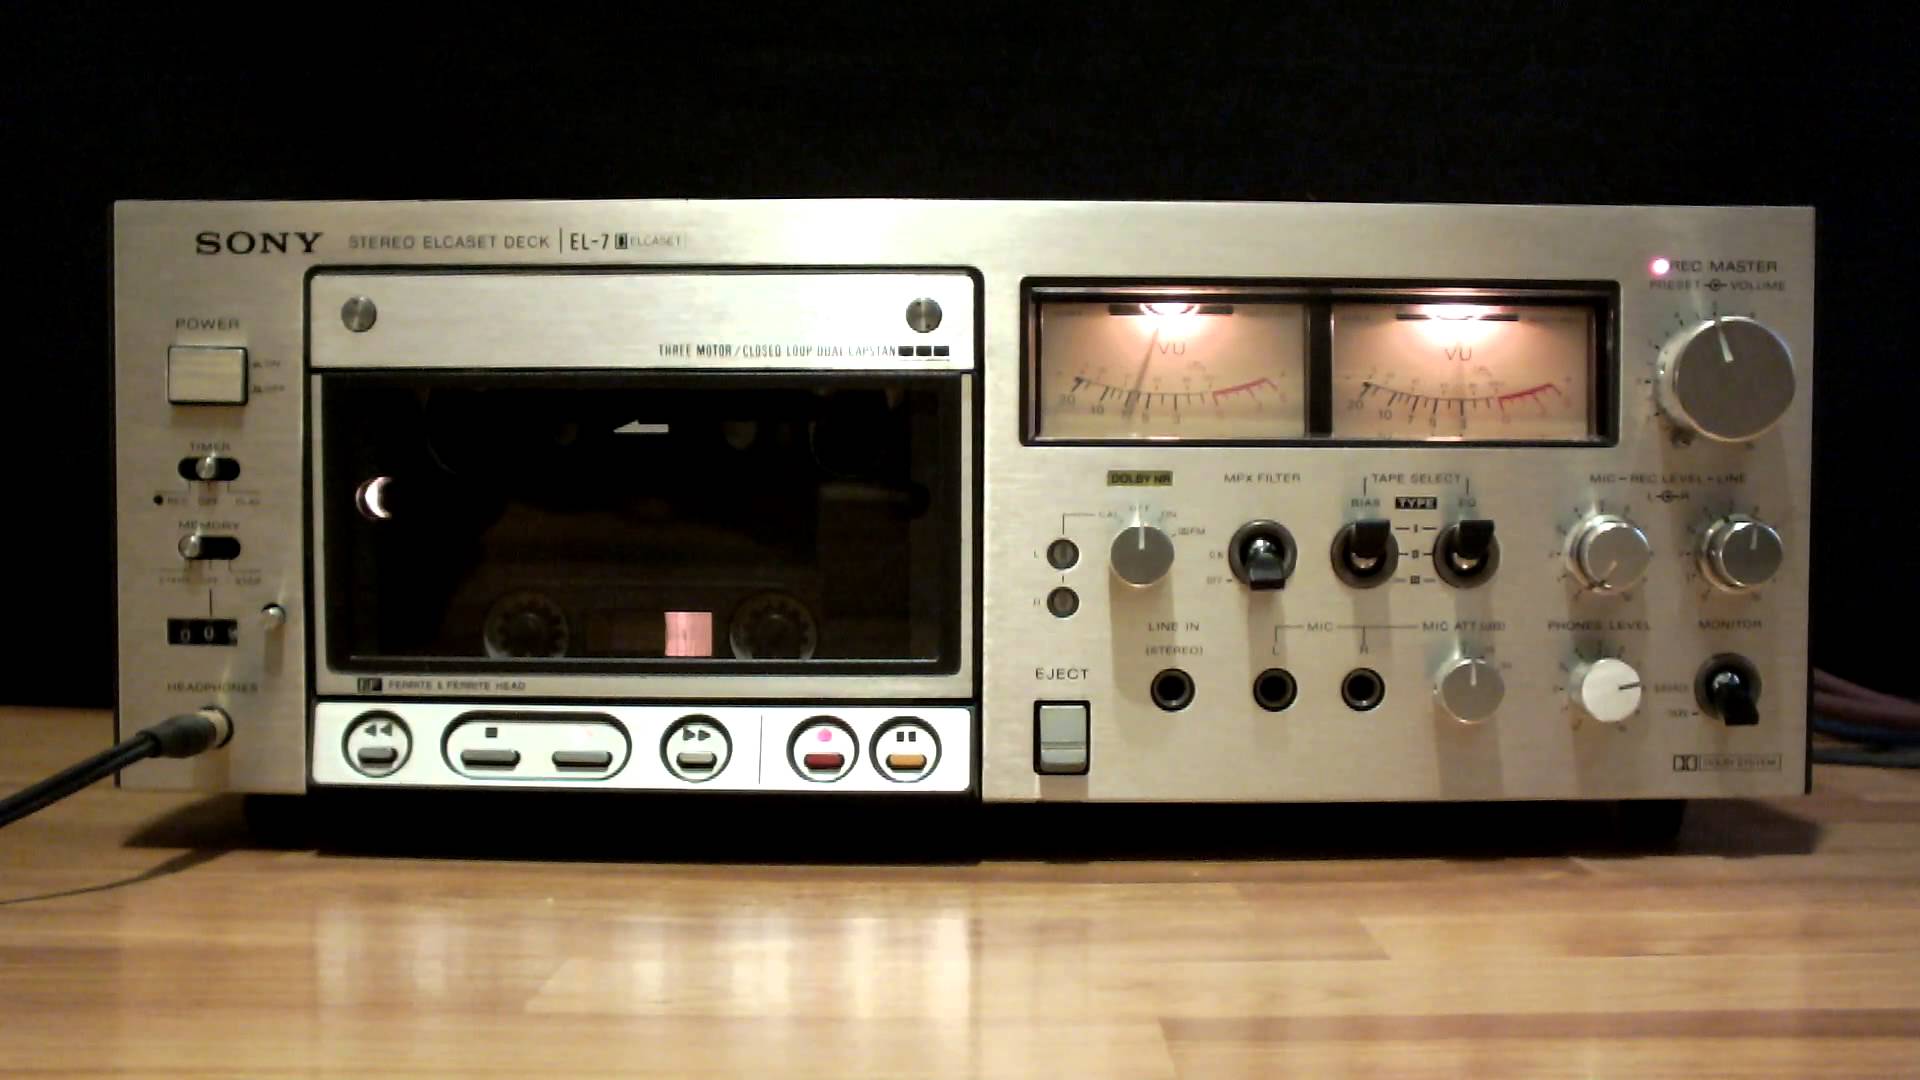 Elcaset: гигантские аудиокассеты прошлого из Японии и забытый аудиоформат - 3